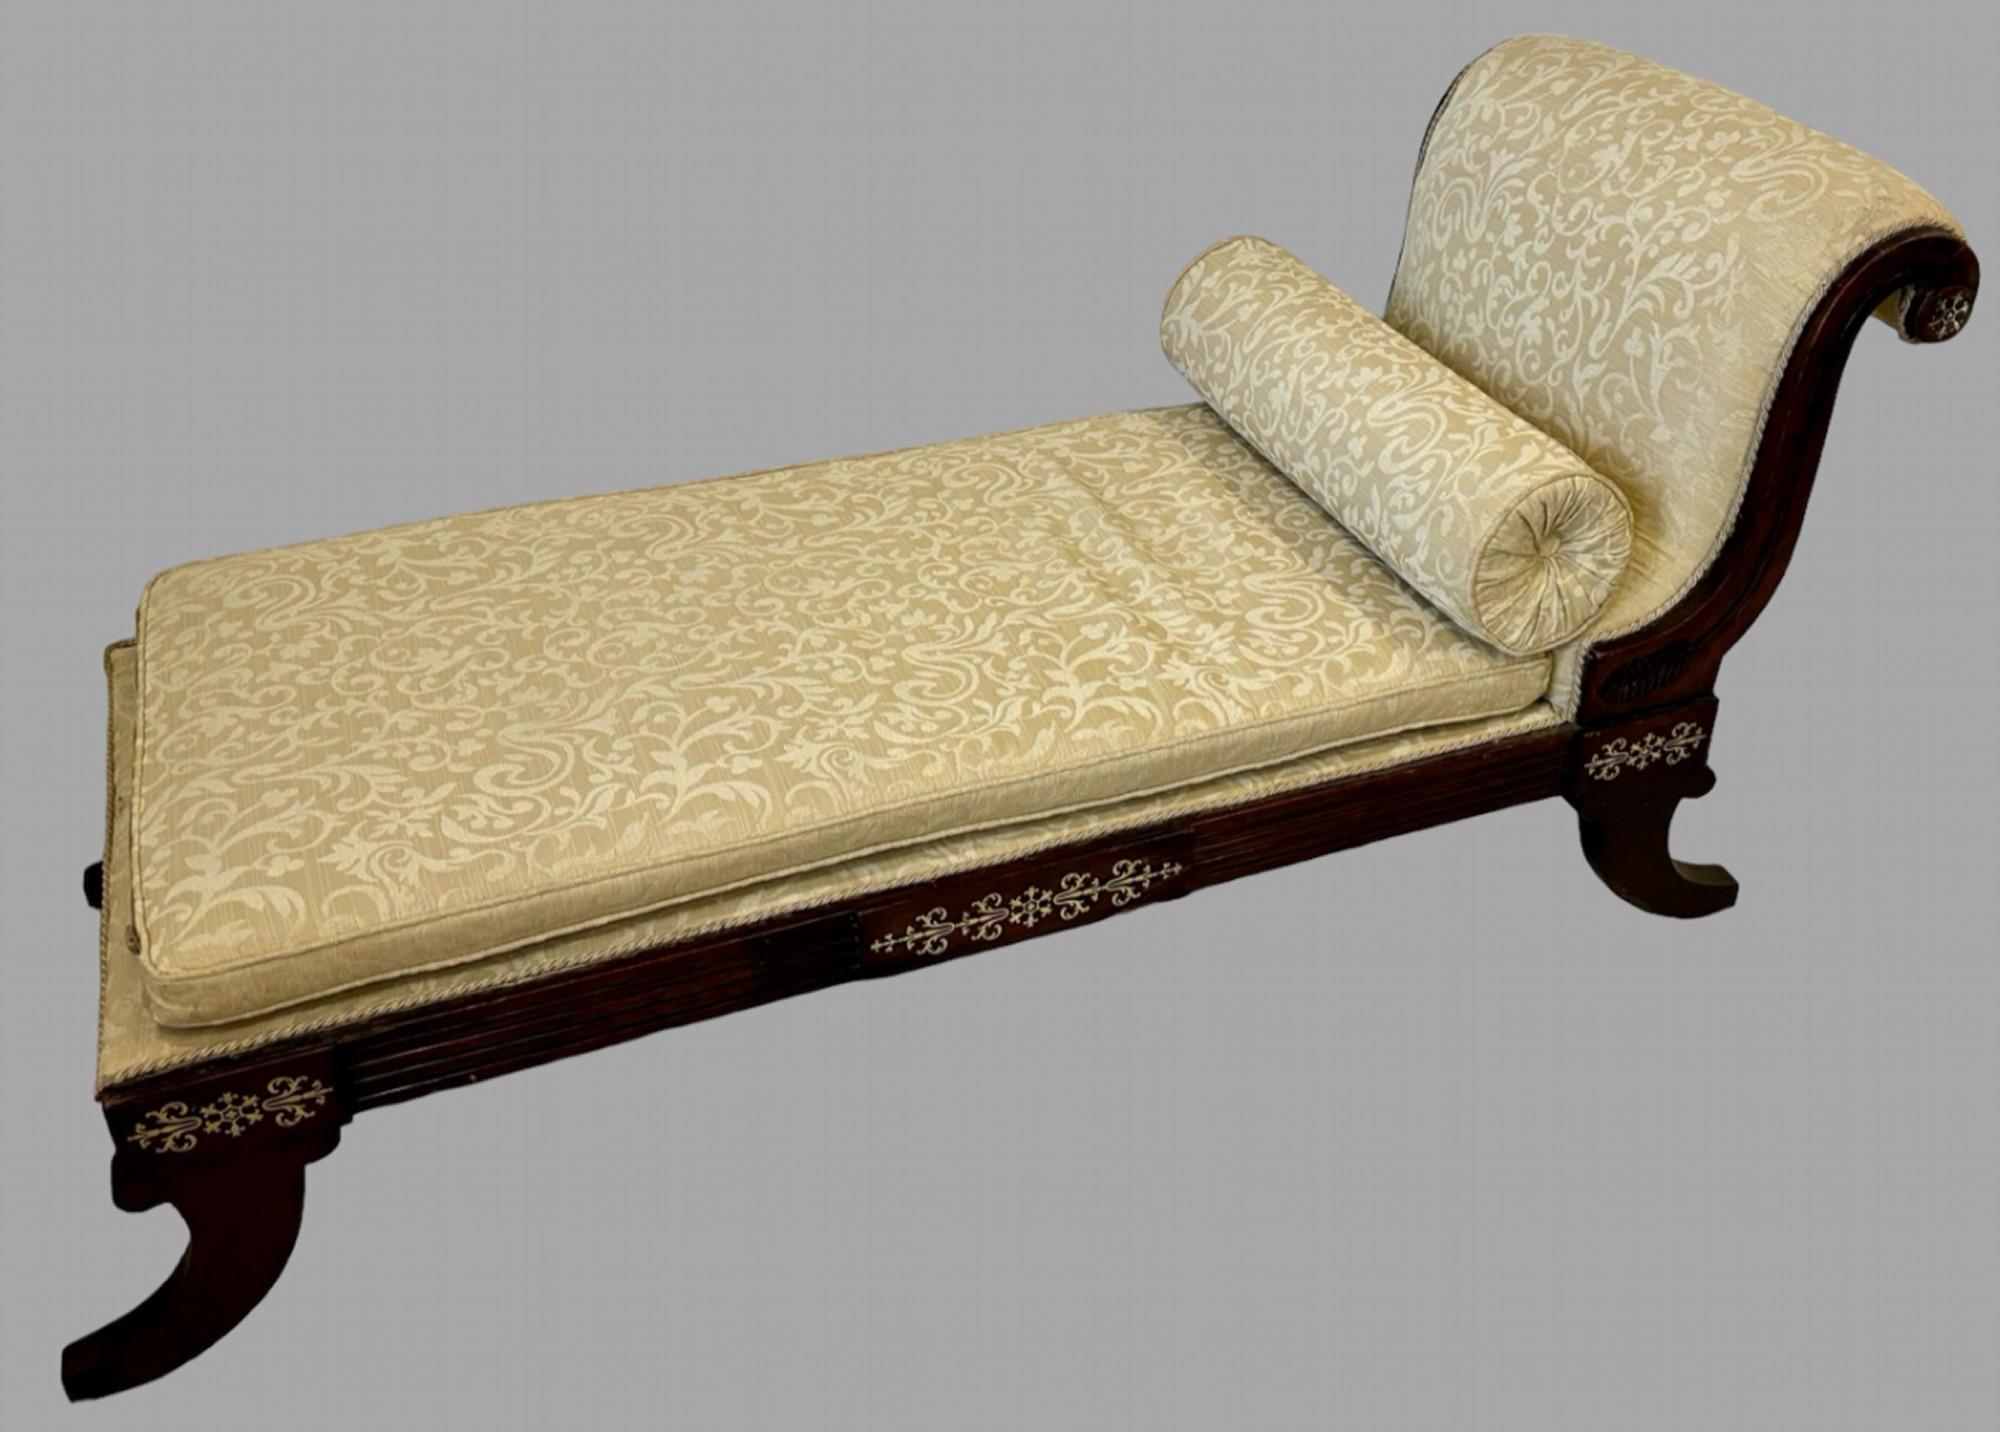 Un fabuleux lit de jour/chaise Regency qui a été restauré avec amour avec des incrustations de laiton plus tardives sur la face avant. Cette pièce en chêne a été entièrement traitée contre les vers du bois, polie et recouverte d'un damas de soie